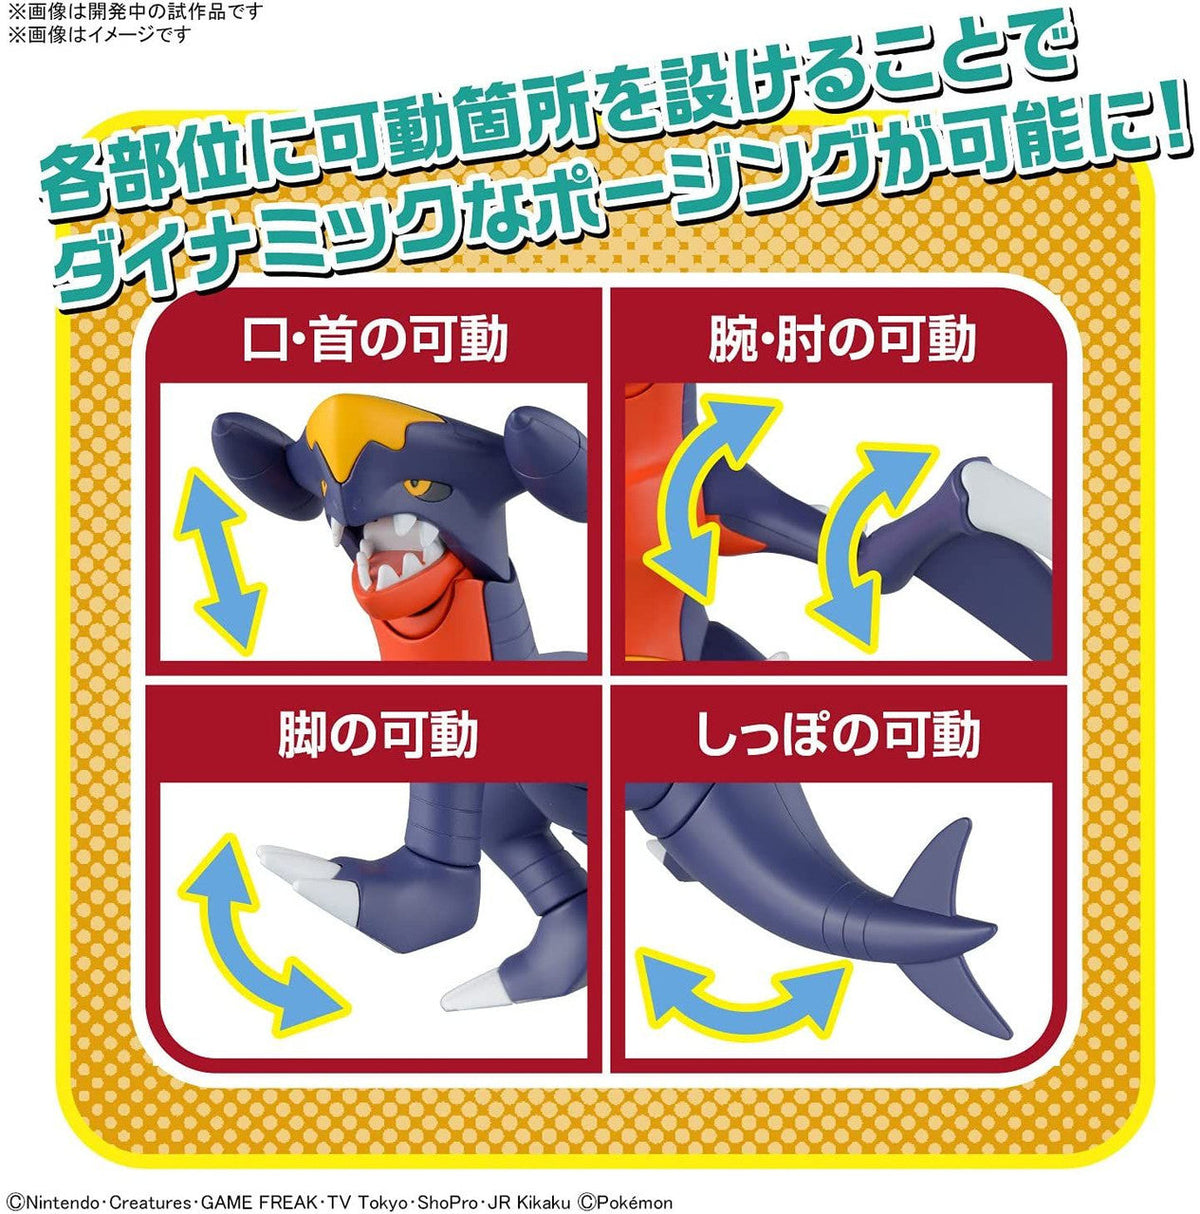 Pokémon Plastic Model Collection No.48 &quot;Garchomp&quot;-Bandai-Ace Cards &amp; Collectibles